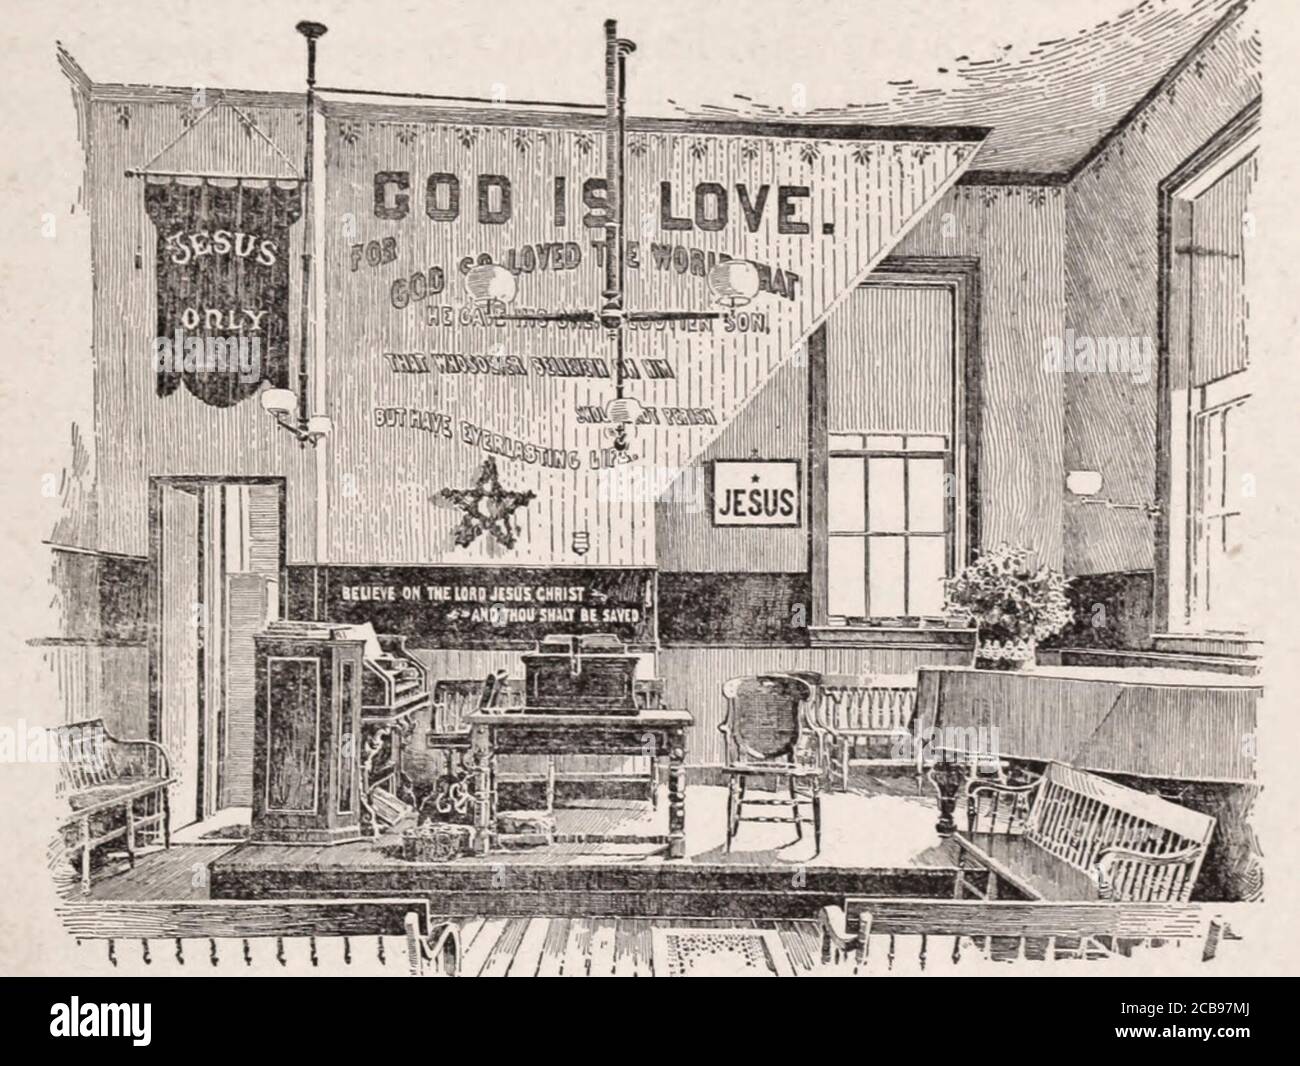 La plate-forme faisant face au public dans la salle de mission de Water Street à New York, vers 1890 Banque D'Images